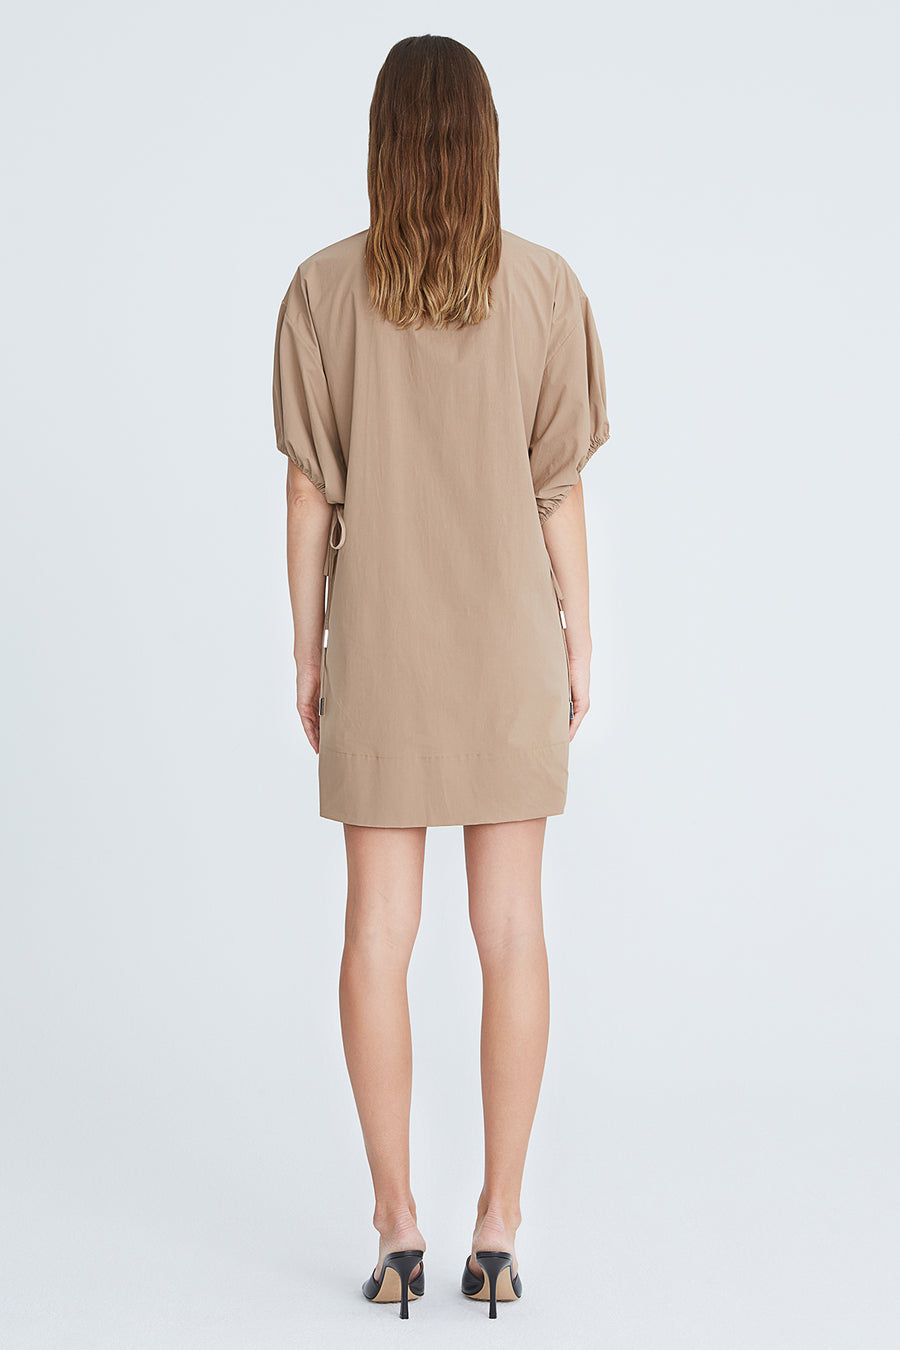 Mikayla Cotton Shirting Dress